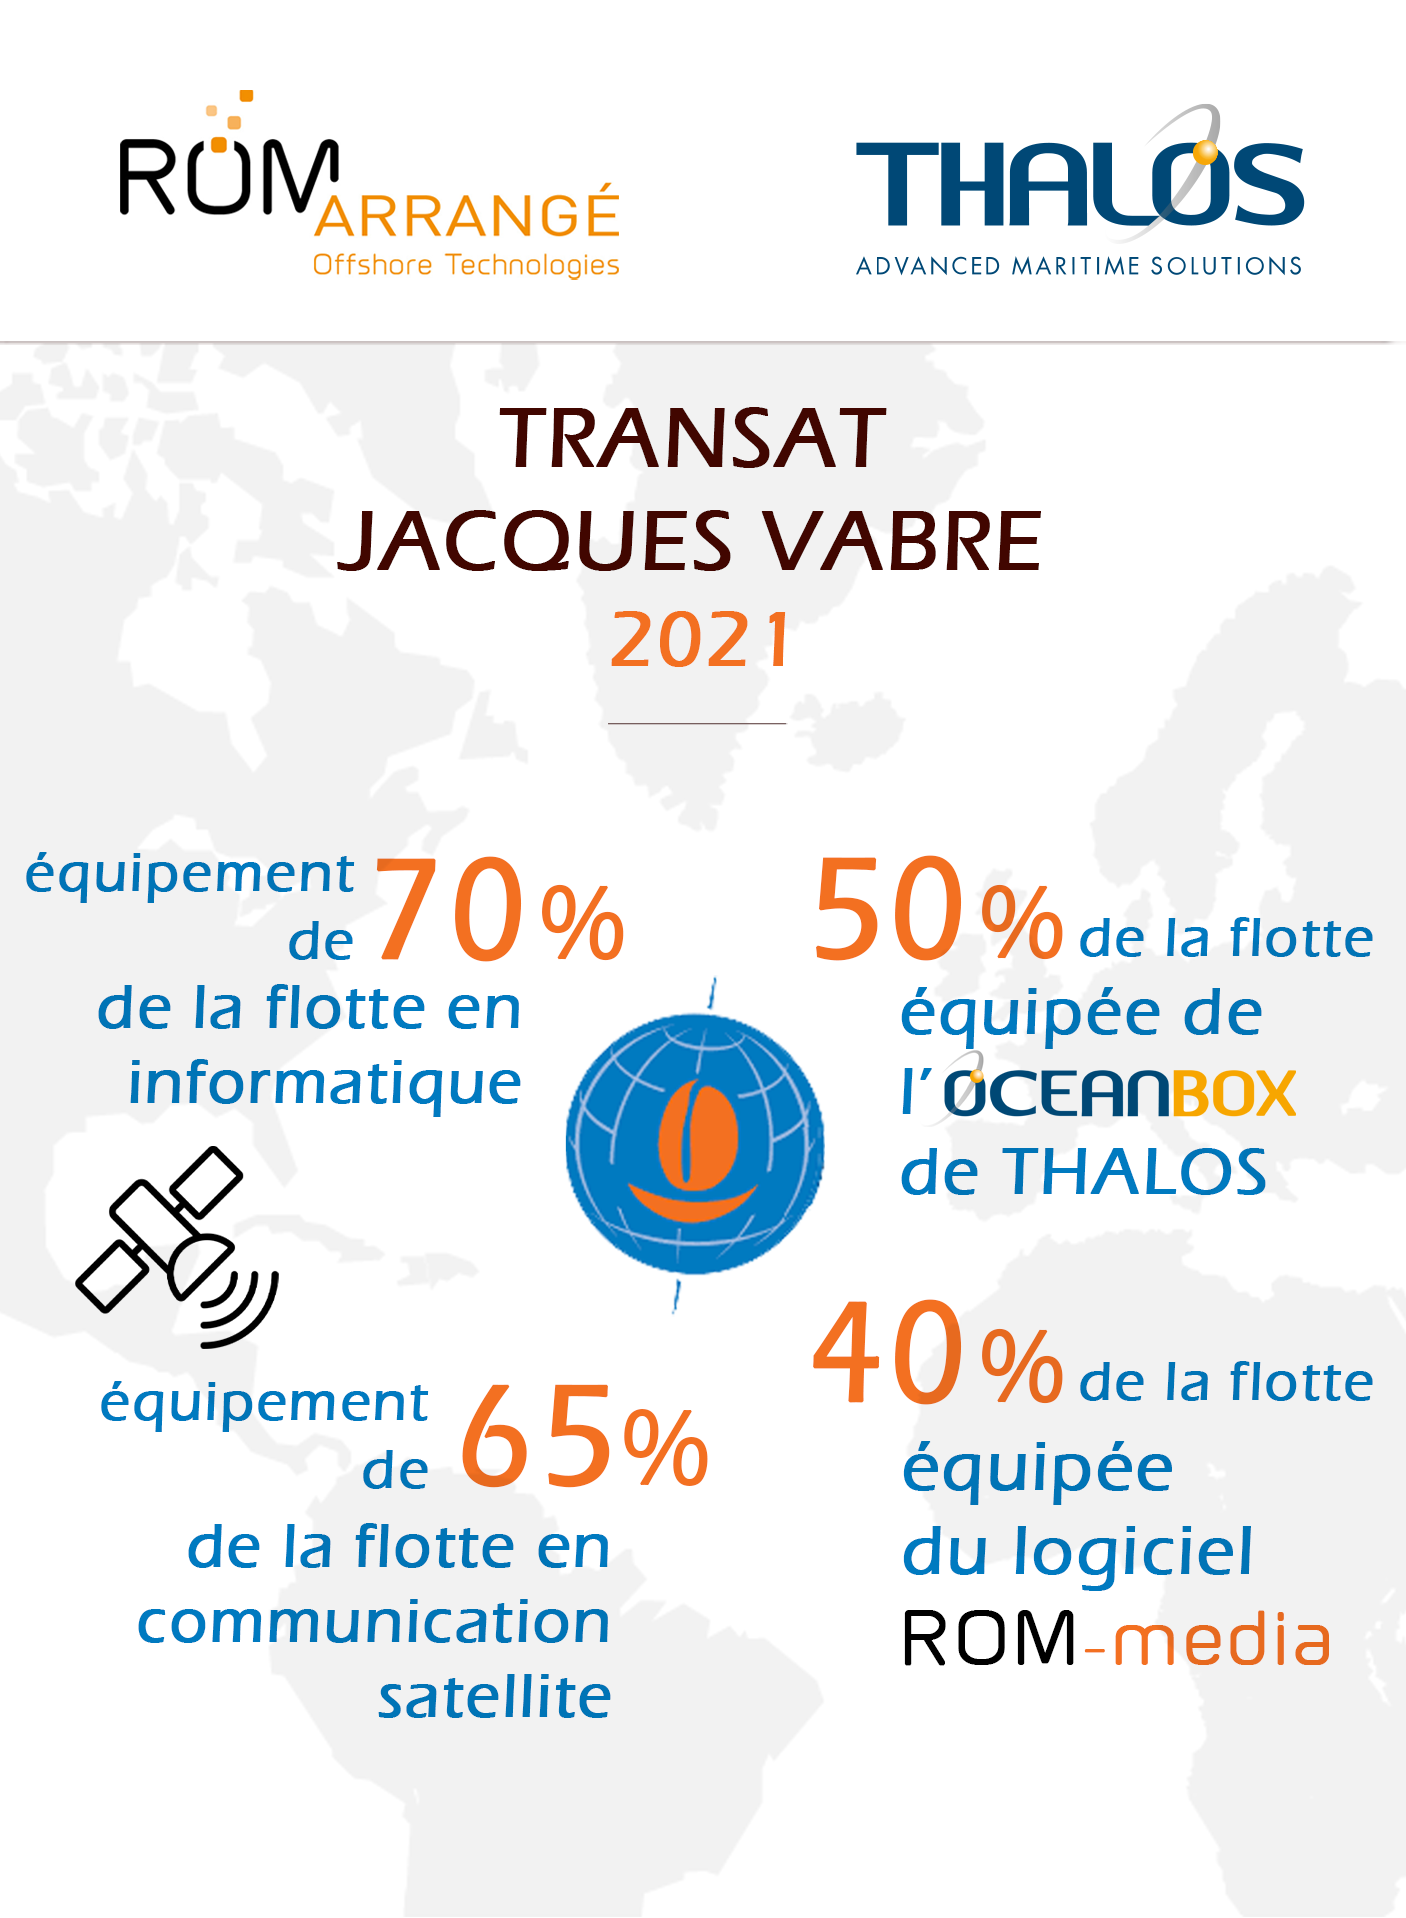 Transat Jacques Vabre : Assistance technique avant départ